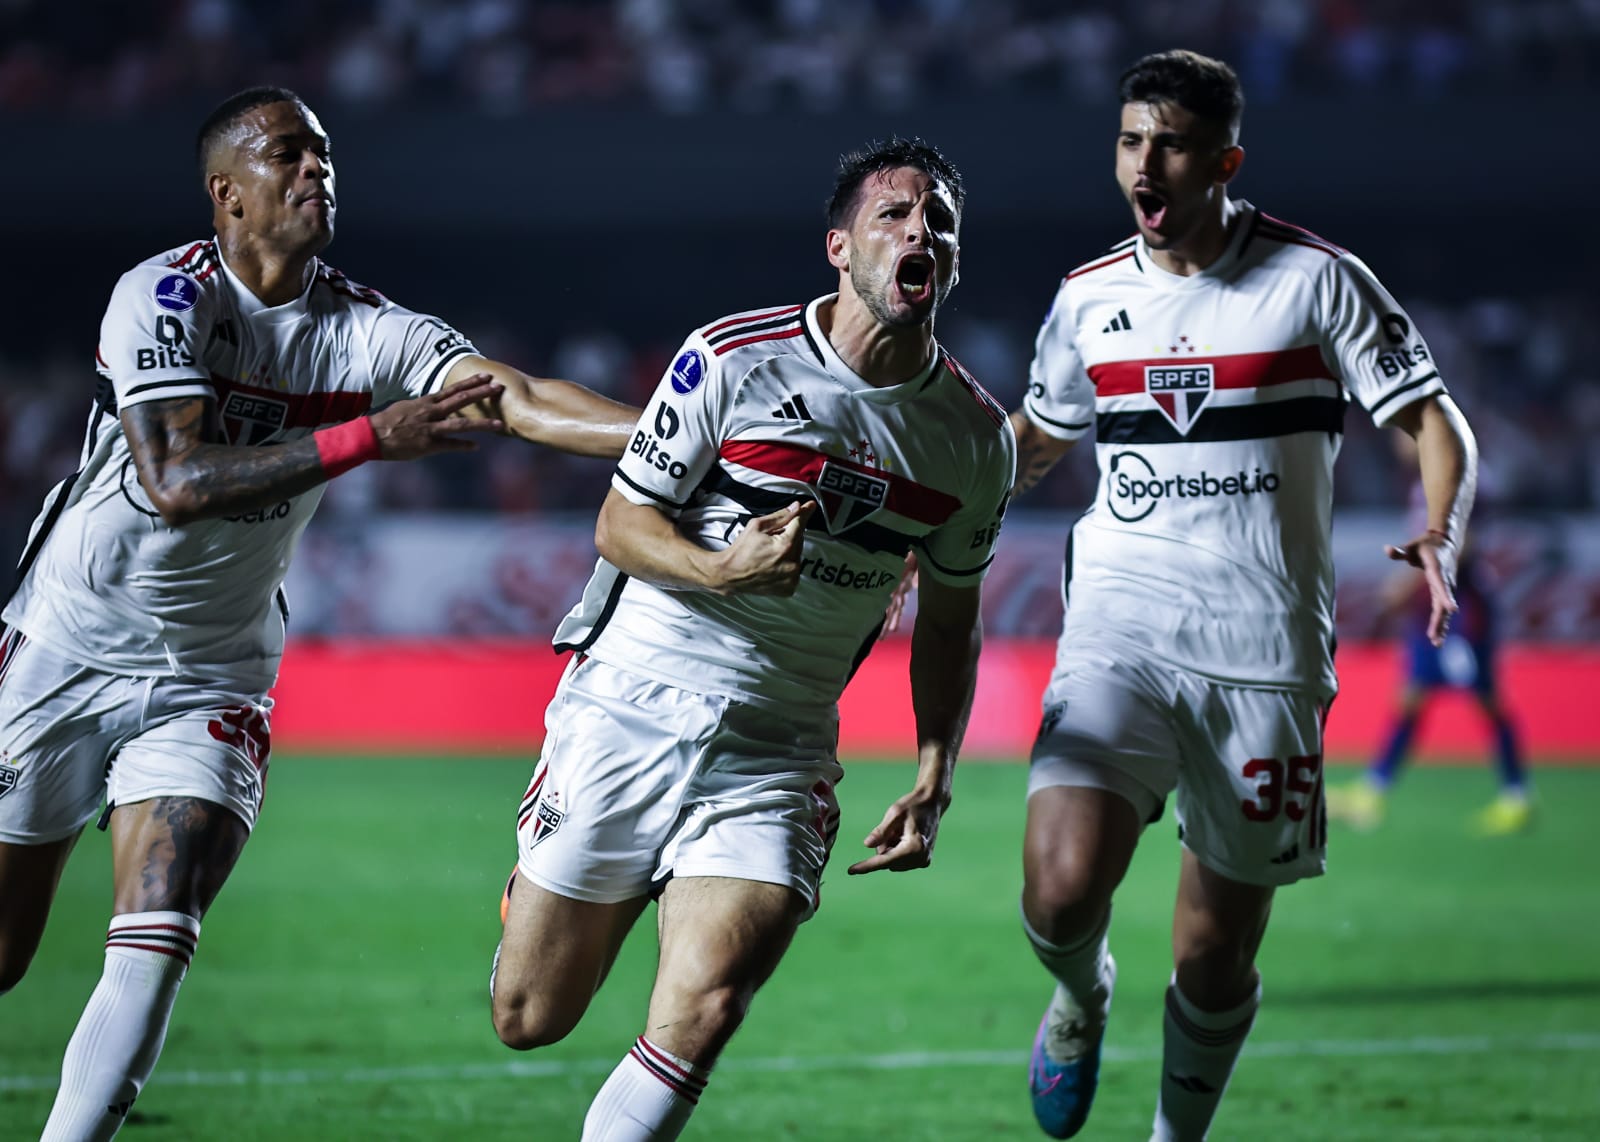 São Paulo mostra força, vence San Lorenzo e confirma classificação (Foto: Fábio Giannelli)